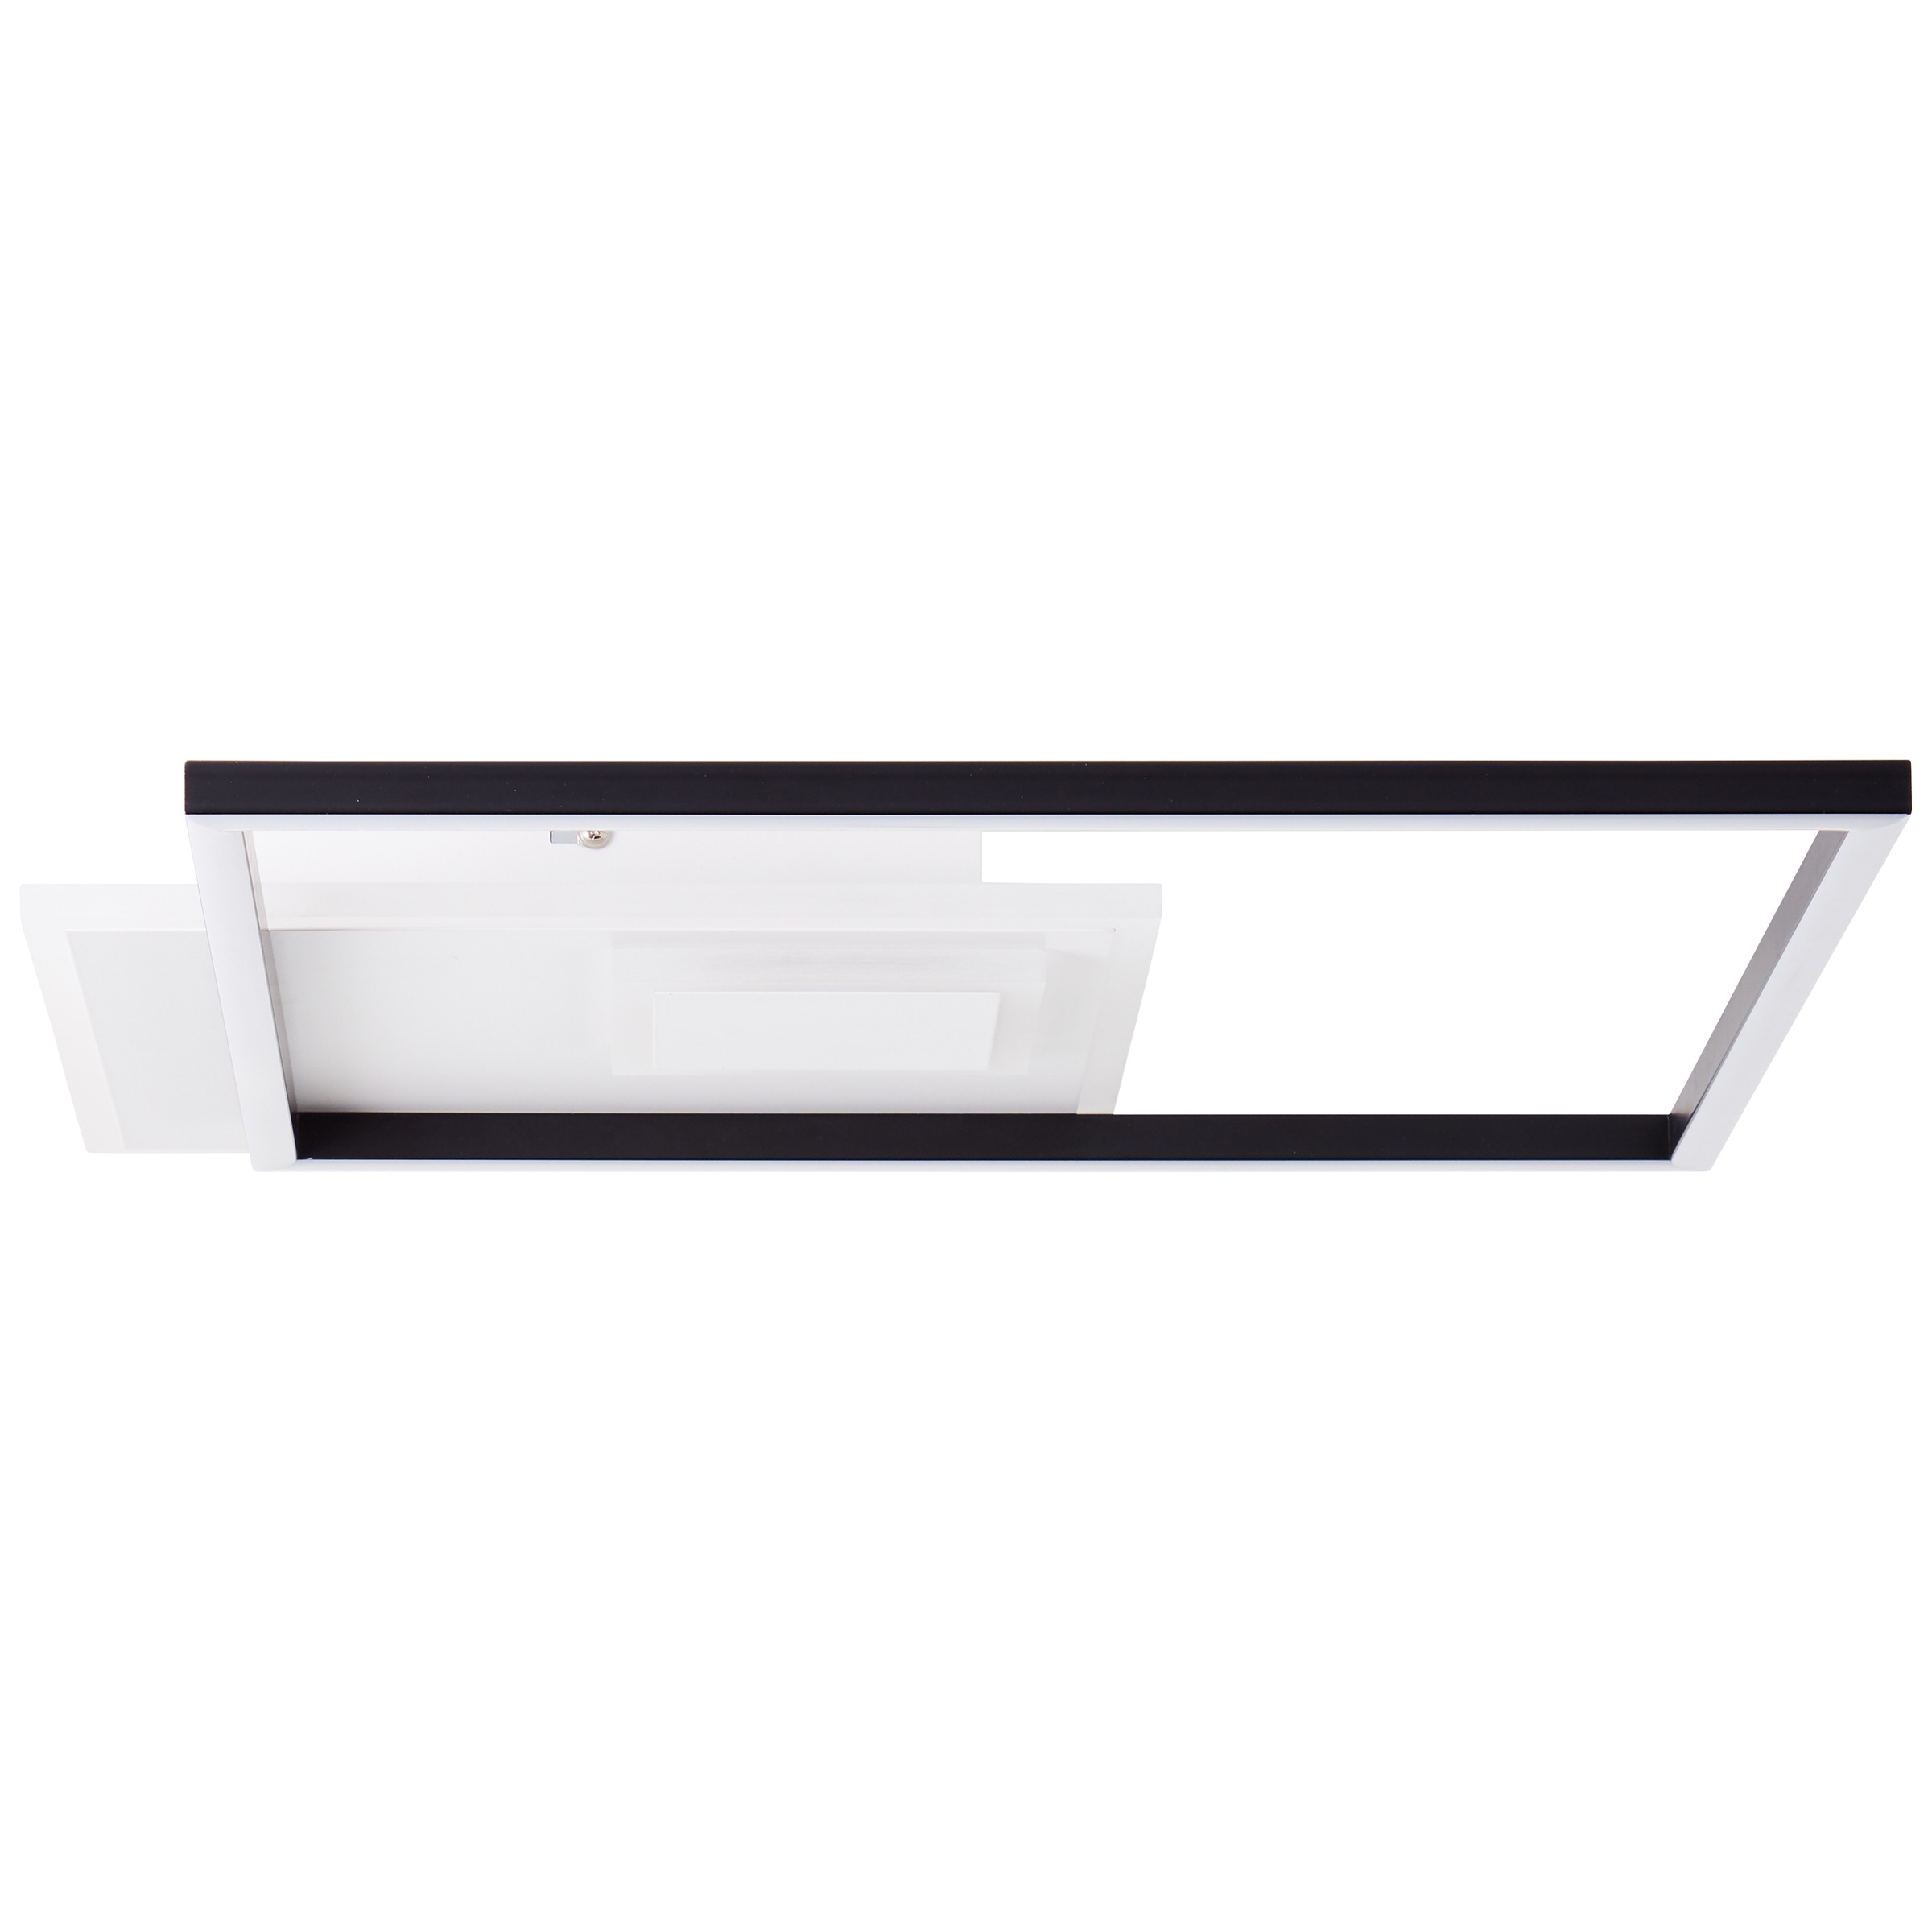 Brilliant LED Deckenleuchte »Iorgo«, 43 x 43 cm, 4300 lm, Metall/Kunststoff, schwarz/weiß